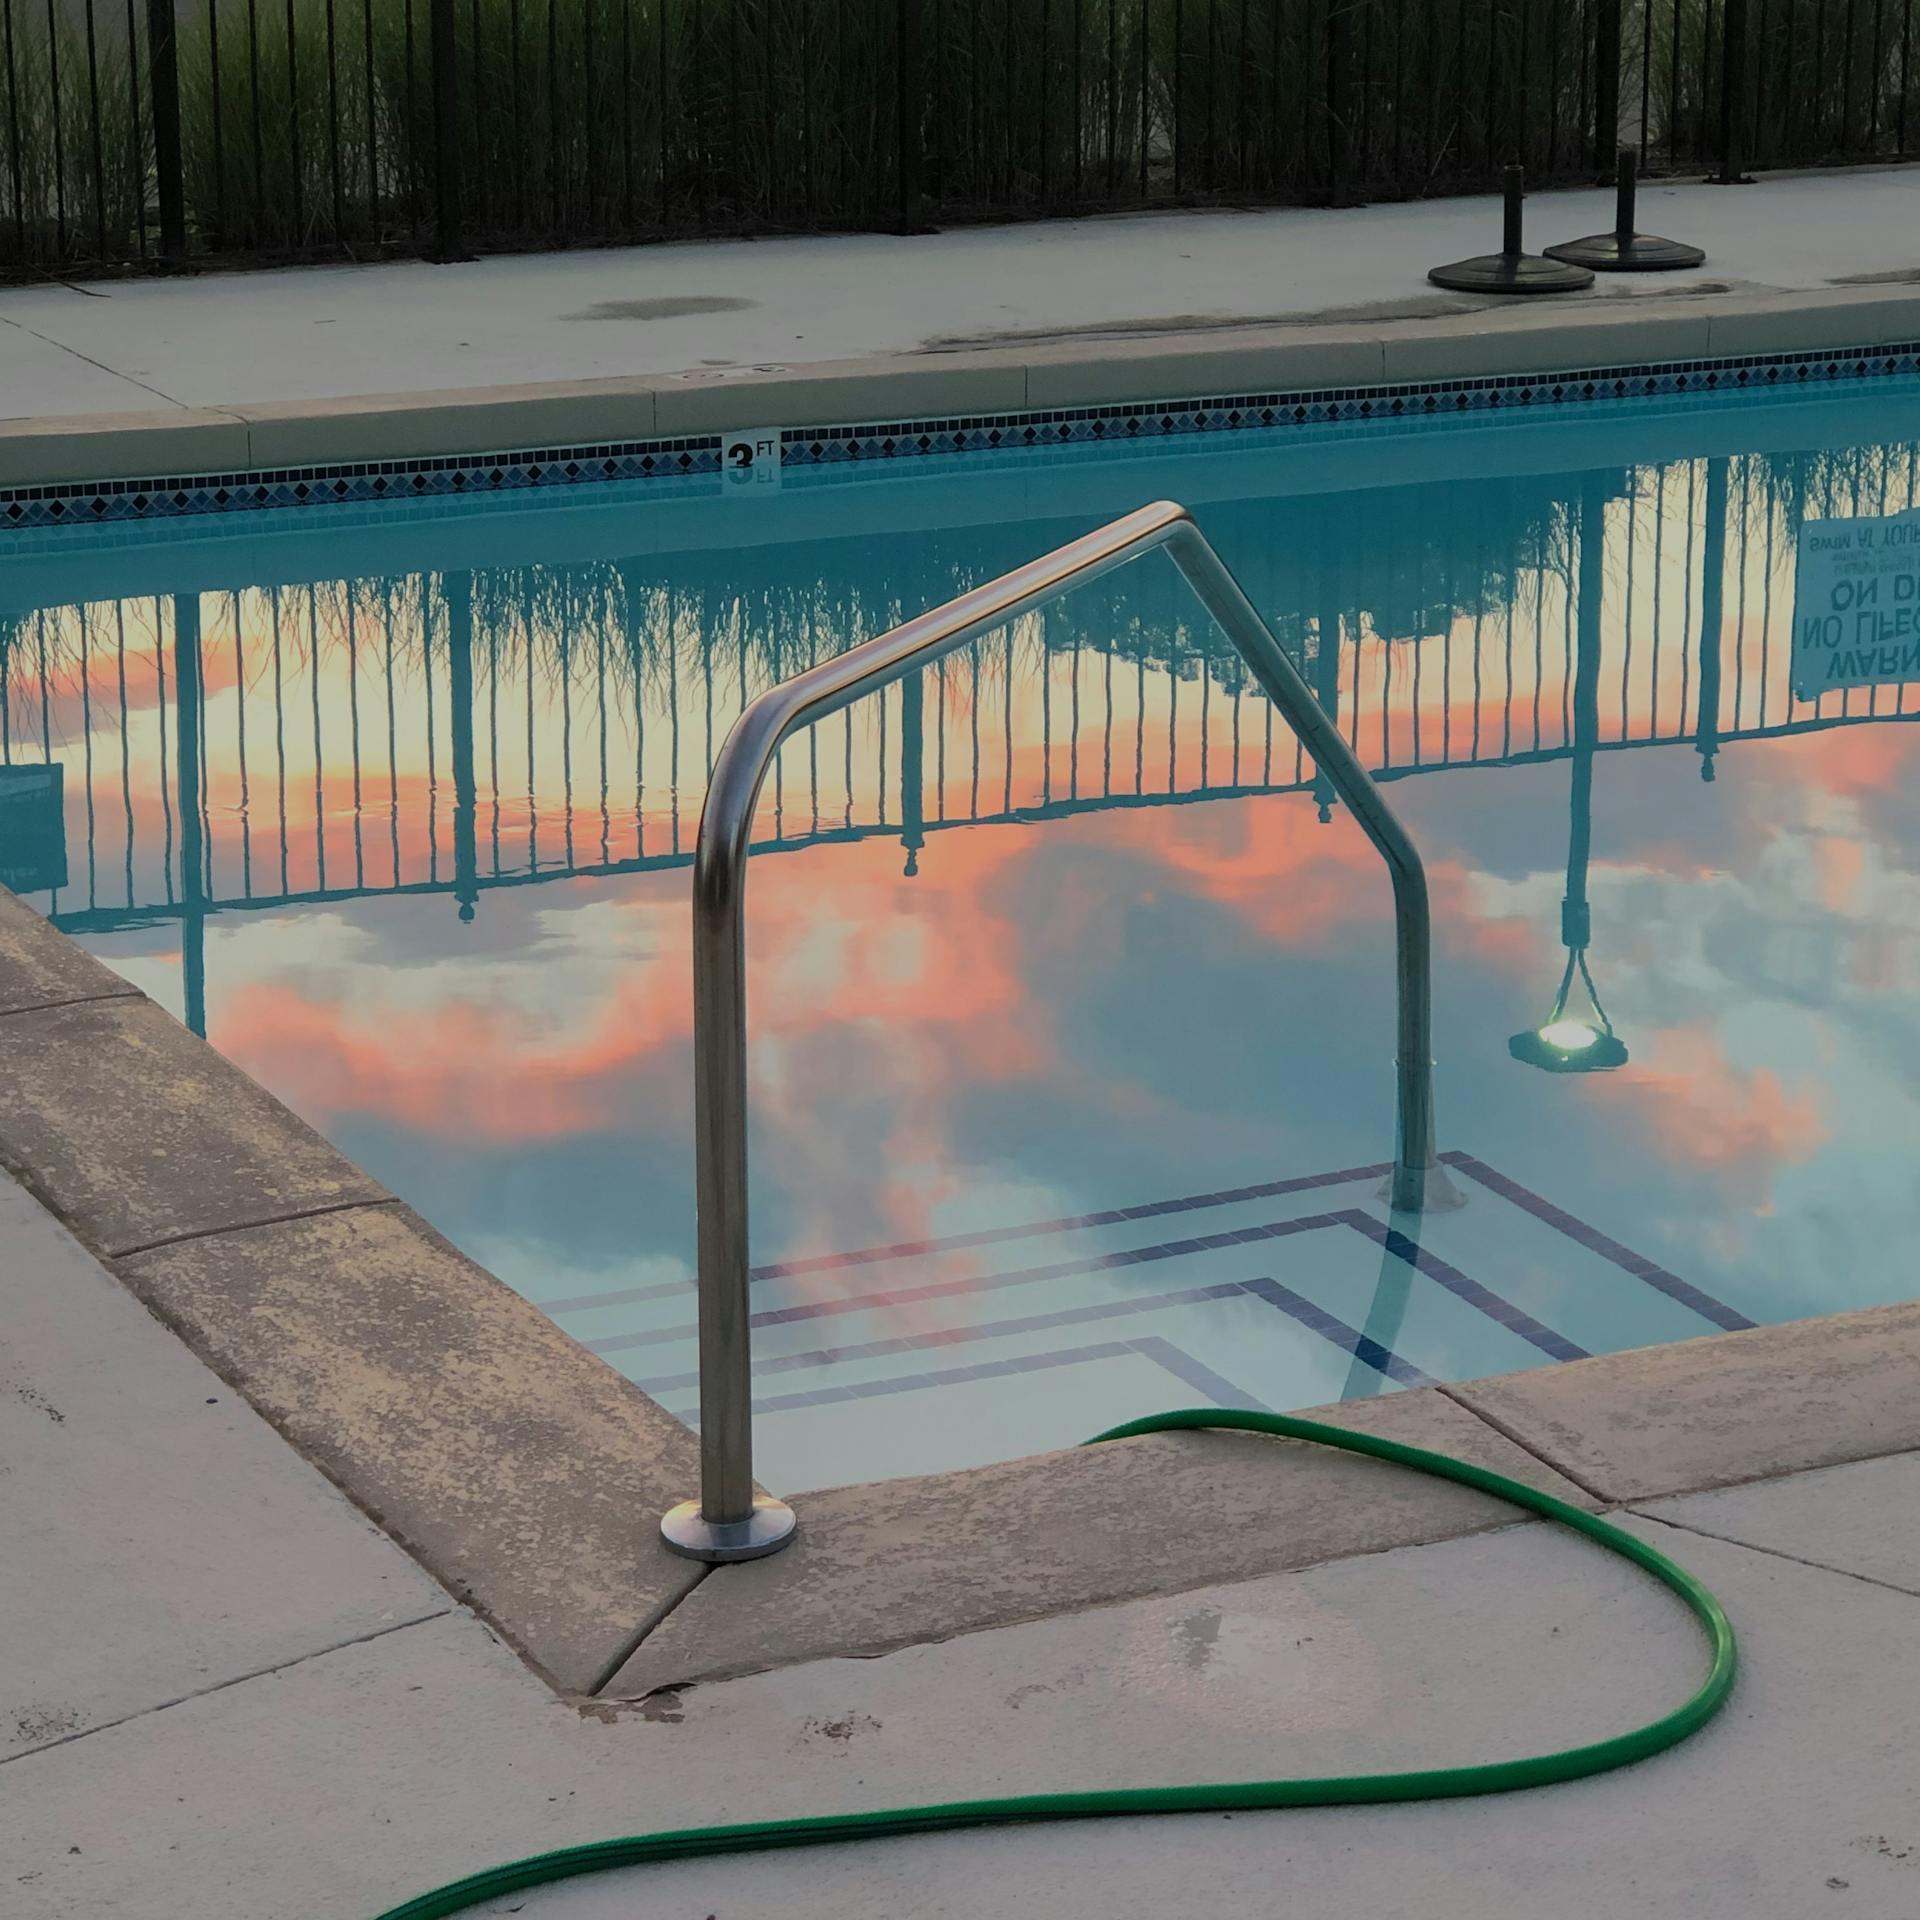 Water in a pool | Source: Pexels